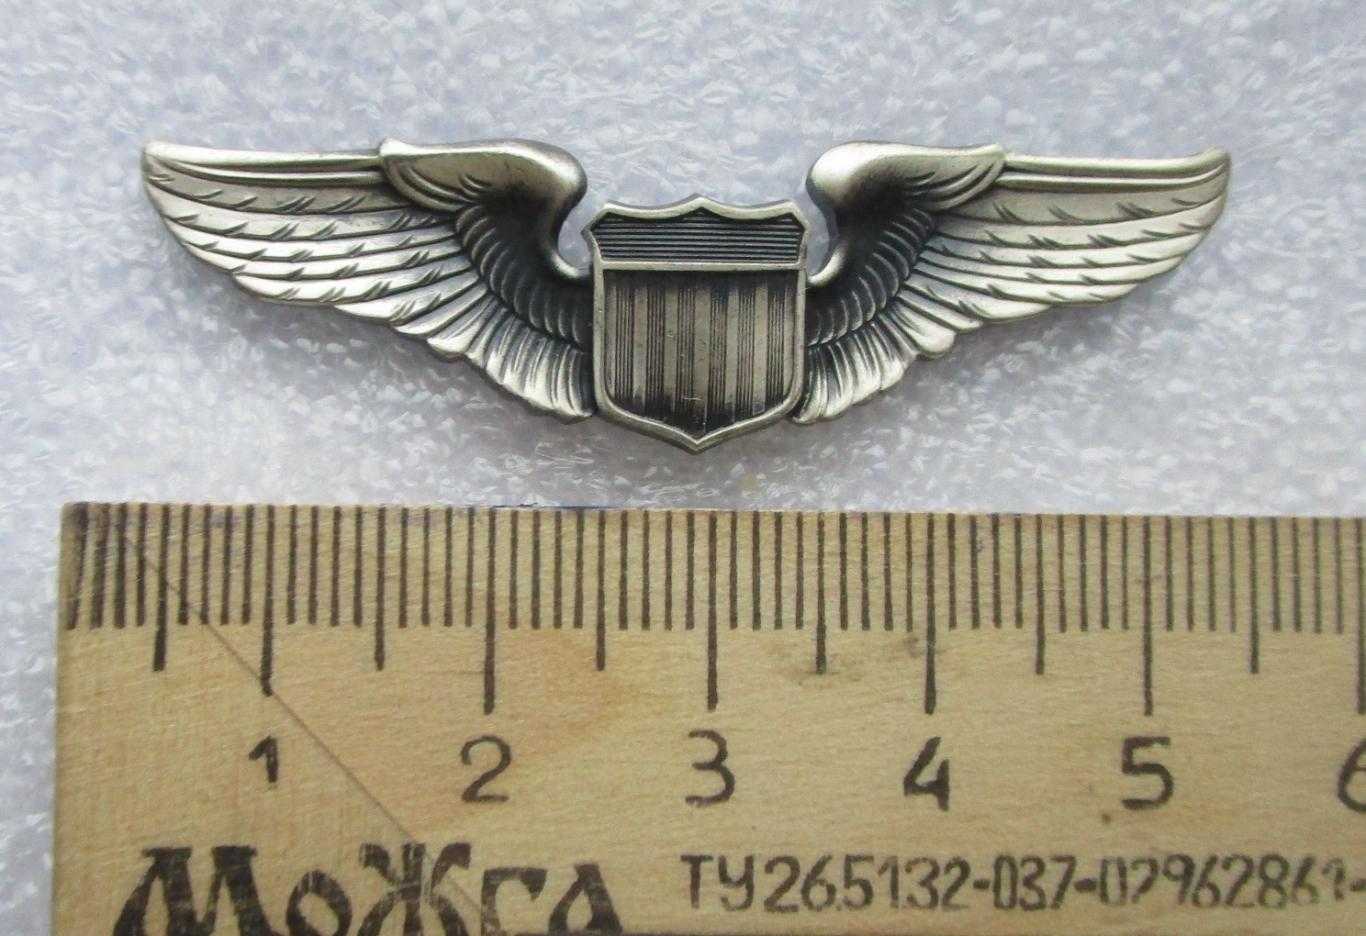 ВВС Авиация США. Квалификационный знак пилота ВВС США.ТМ Крылья. 1